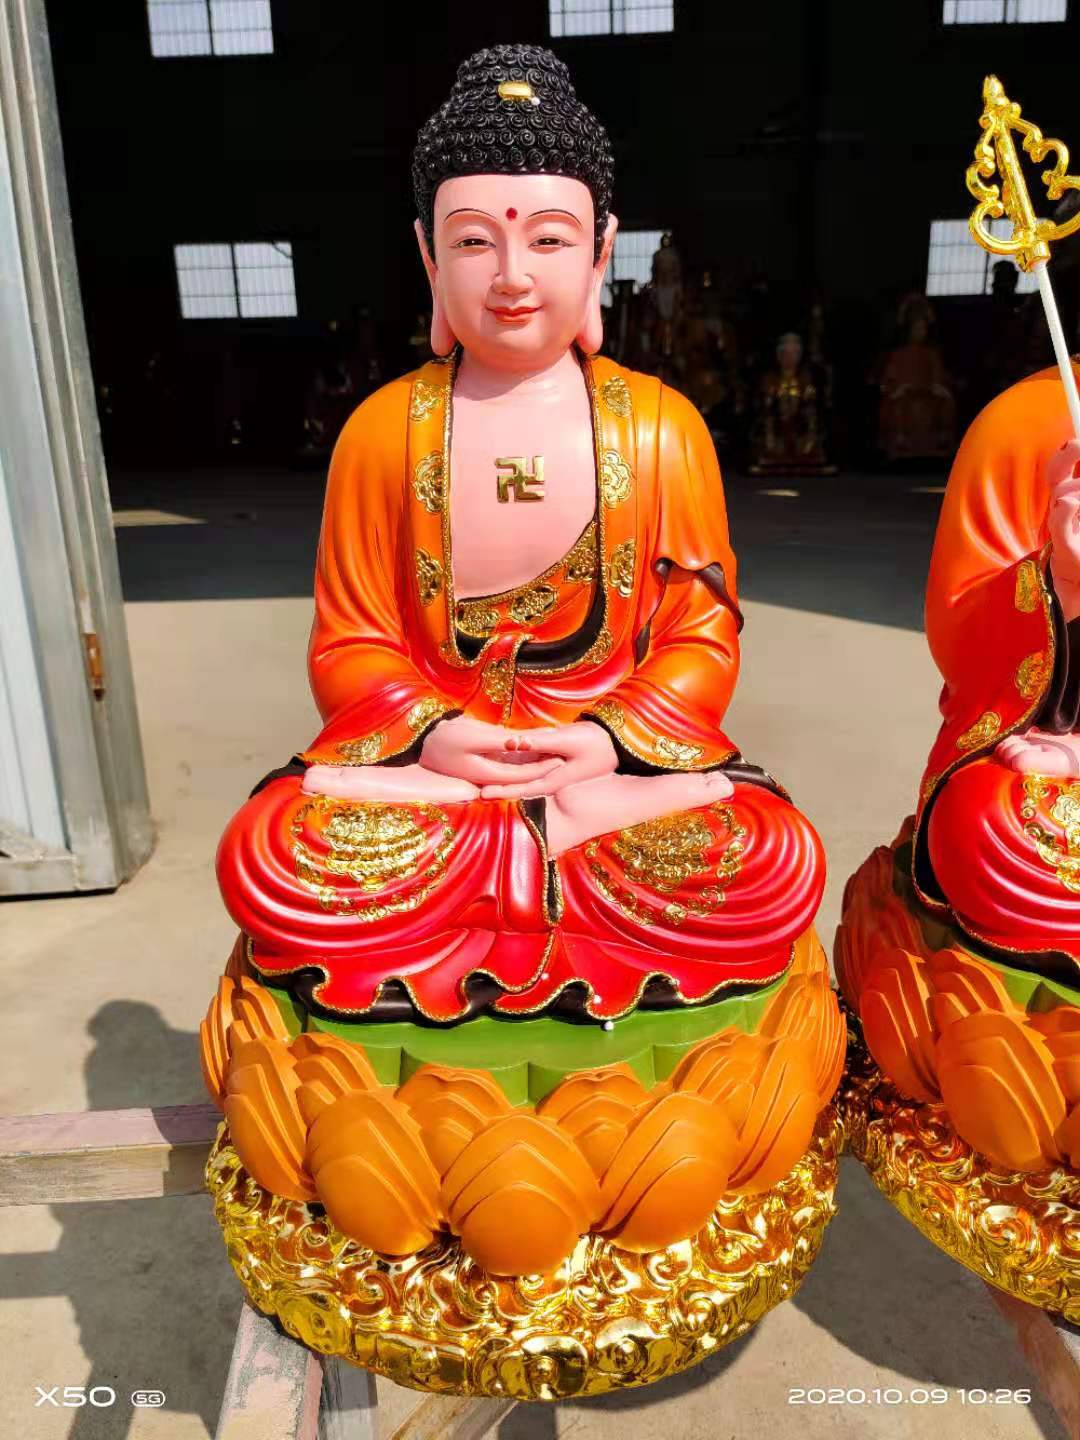 玻璃钢彩绘婆娑三圣佛像介绍 地藏菩萨佛像 弥勒笑佛佛像